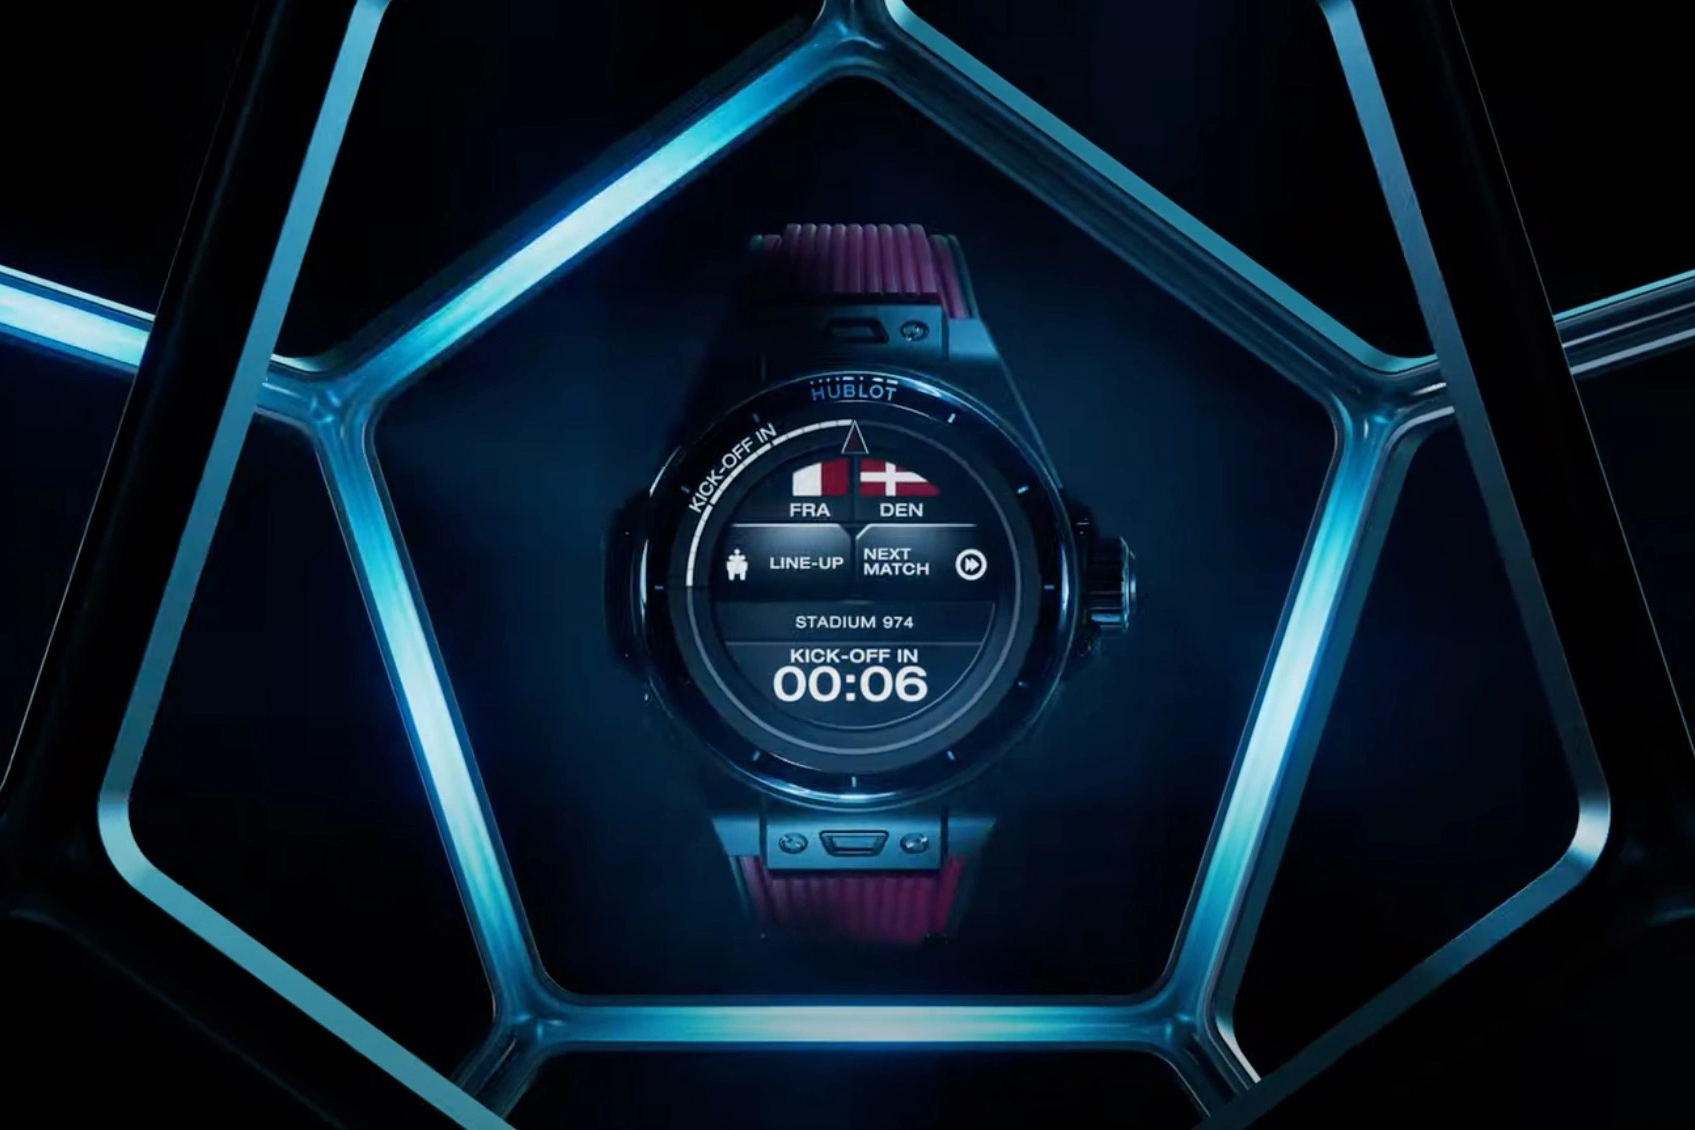 Hublot ra mắt đồng hồ Big Bang dành cho World Cup Qatar 2022 - 3